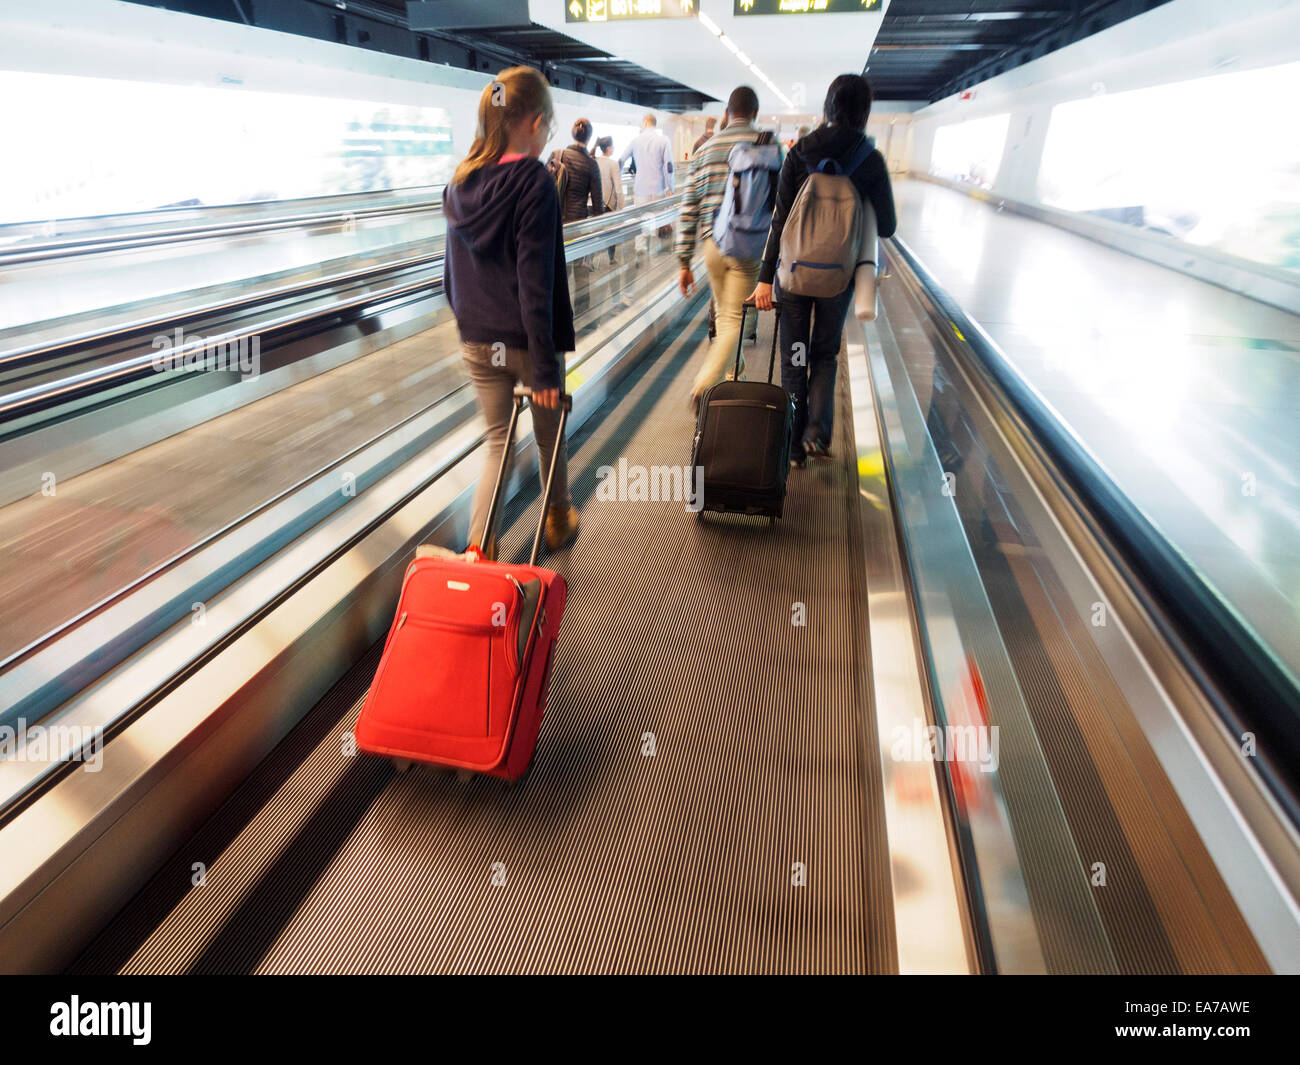 Rückansicht des Menschen mit rollenden Koffern auf ein Laufband am Flughafen Stockfoto